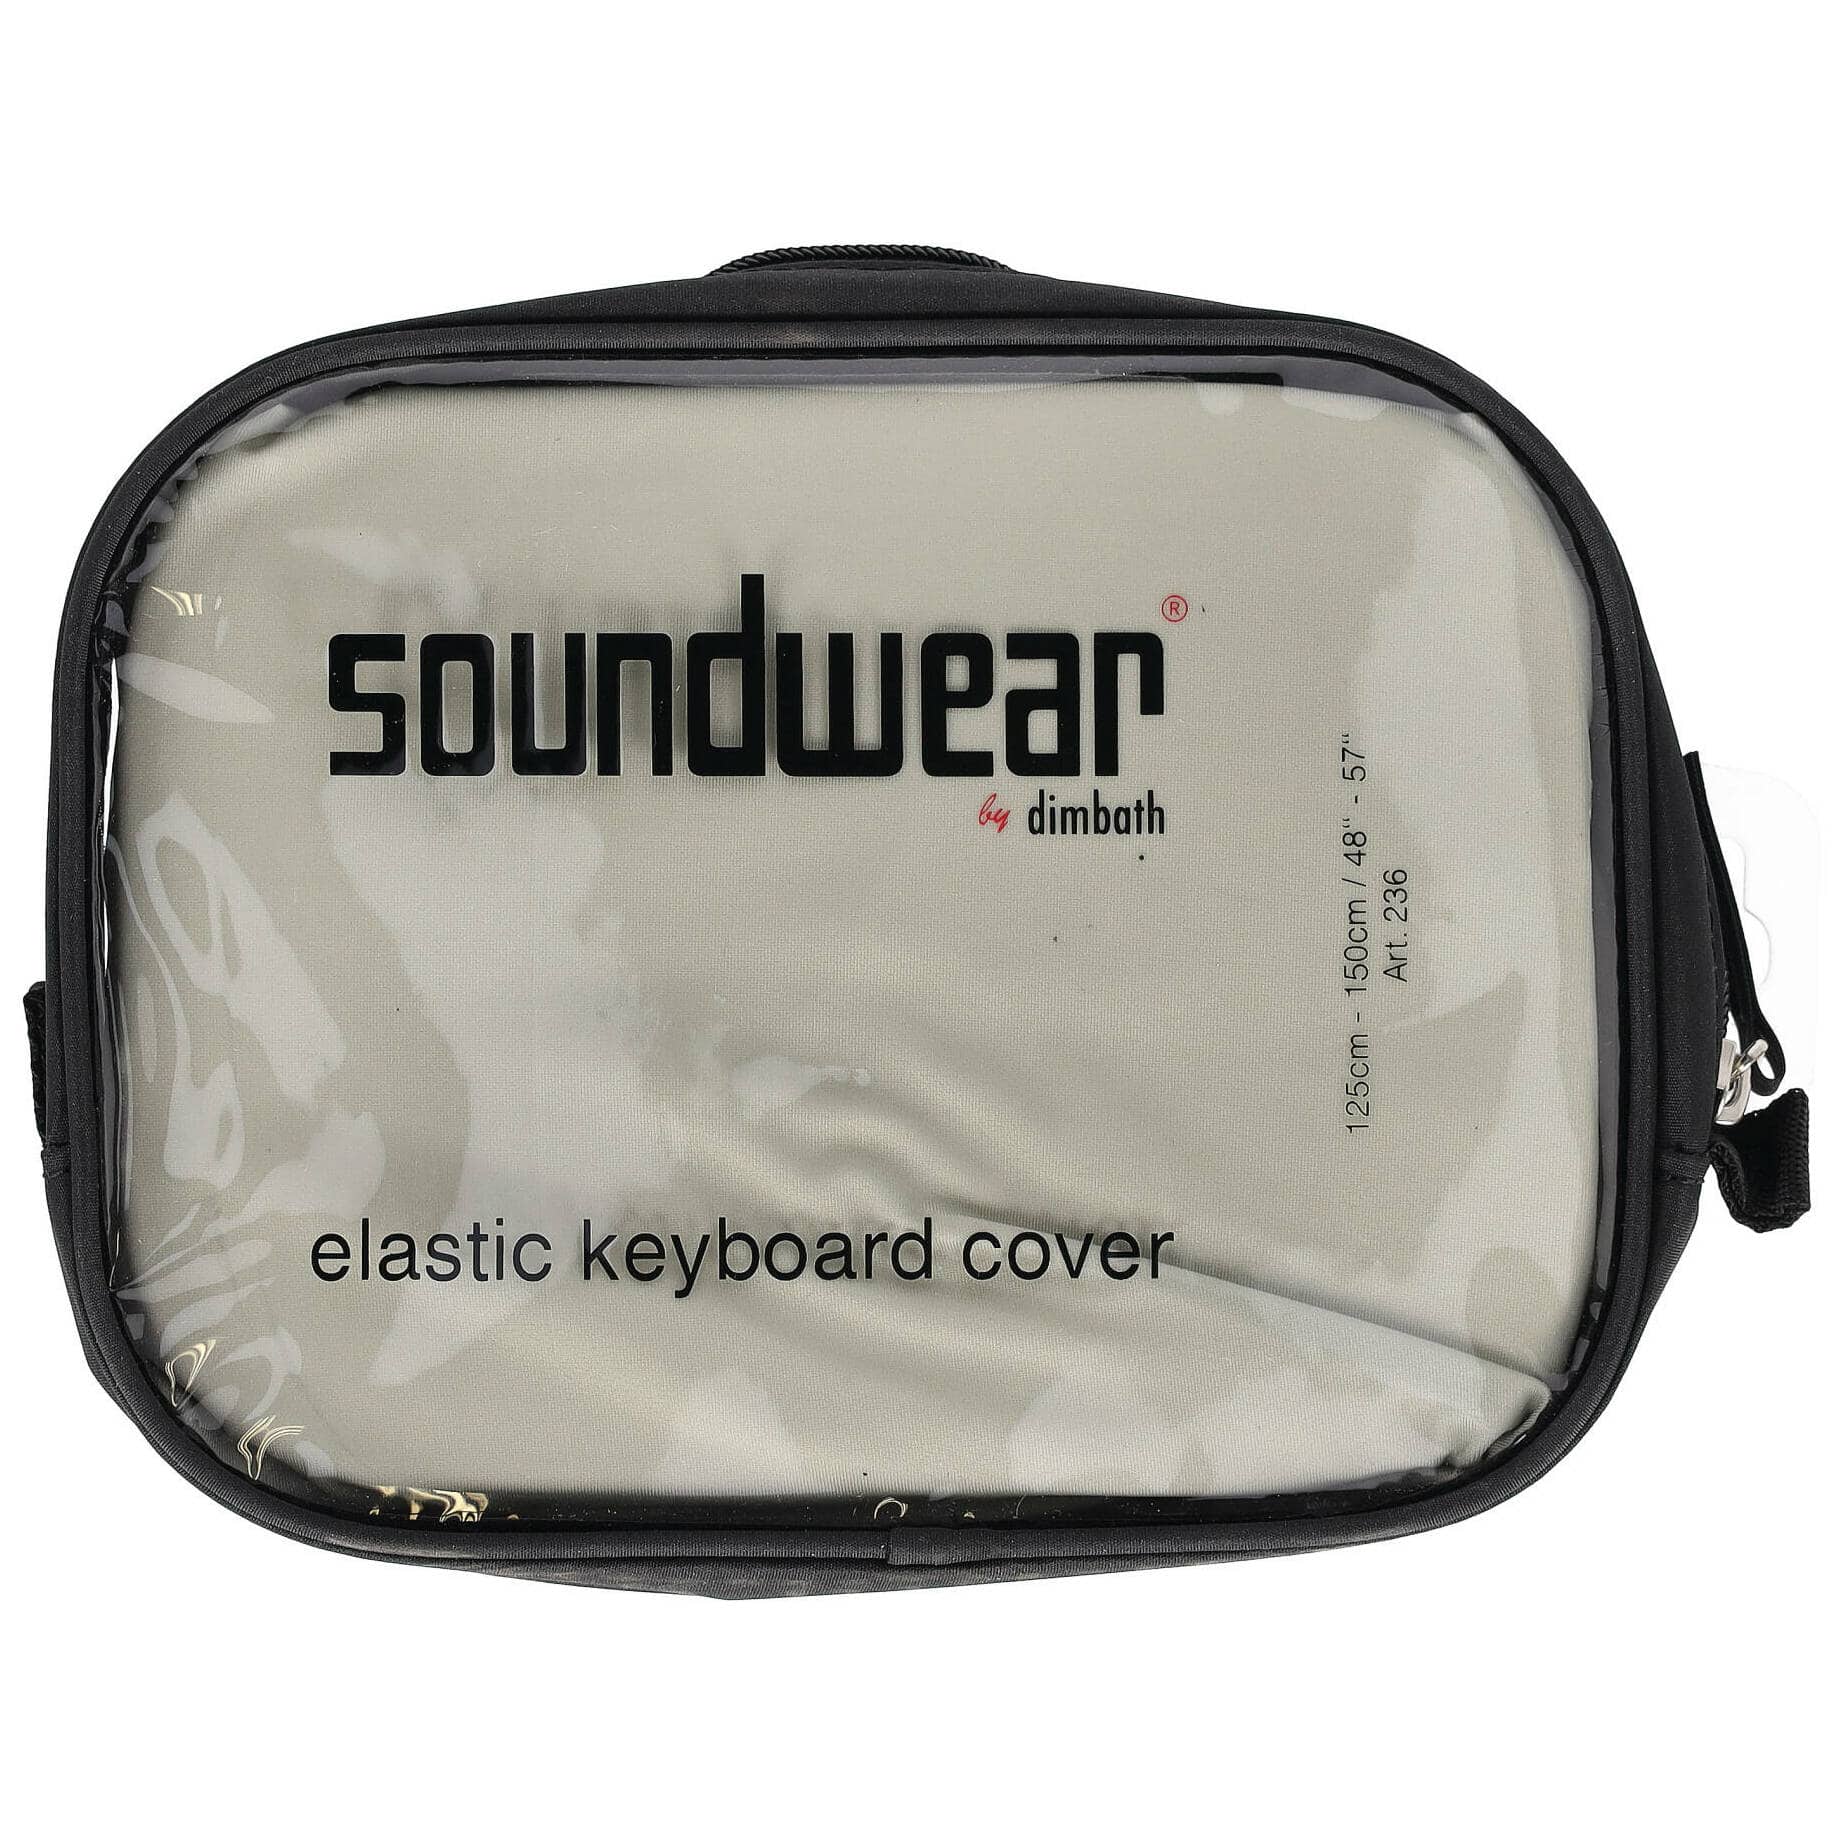 Soundwear by Dimbath Elastische Keyboard Abdeckhaube silber (125